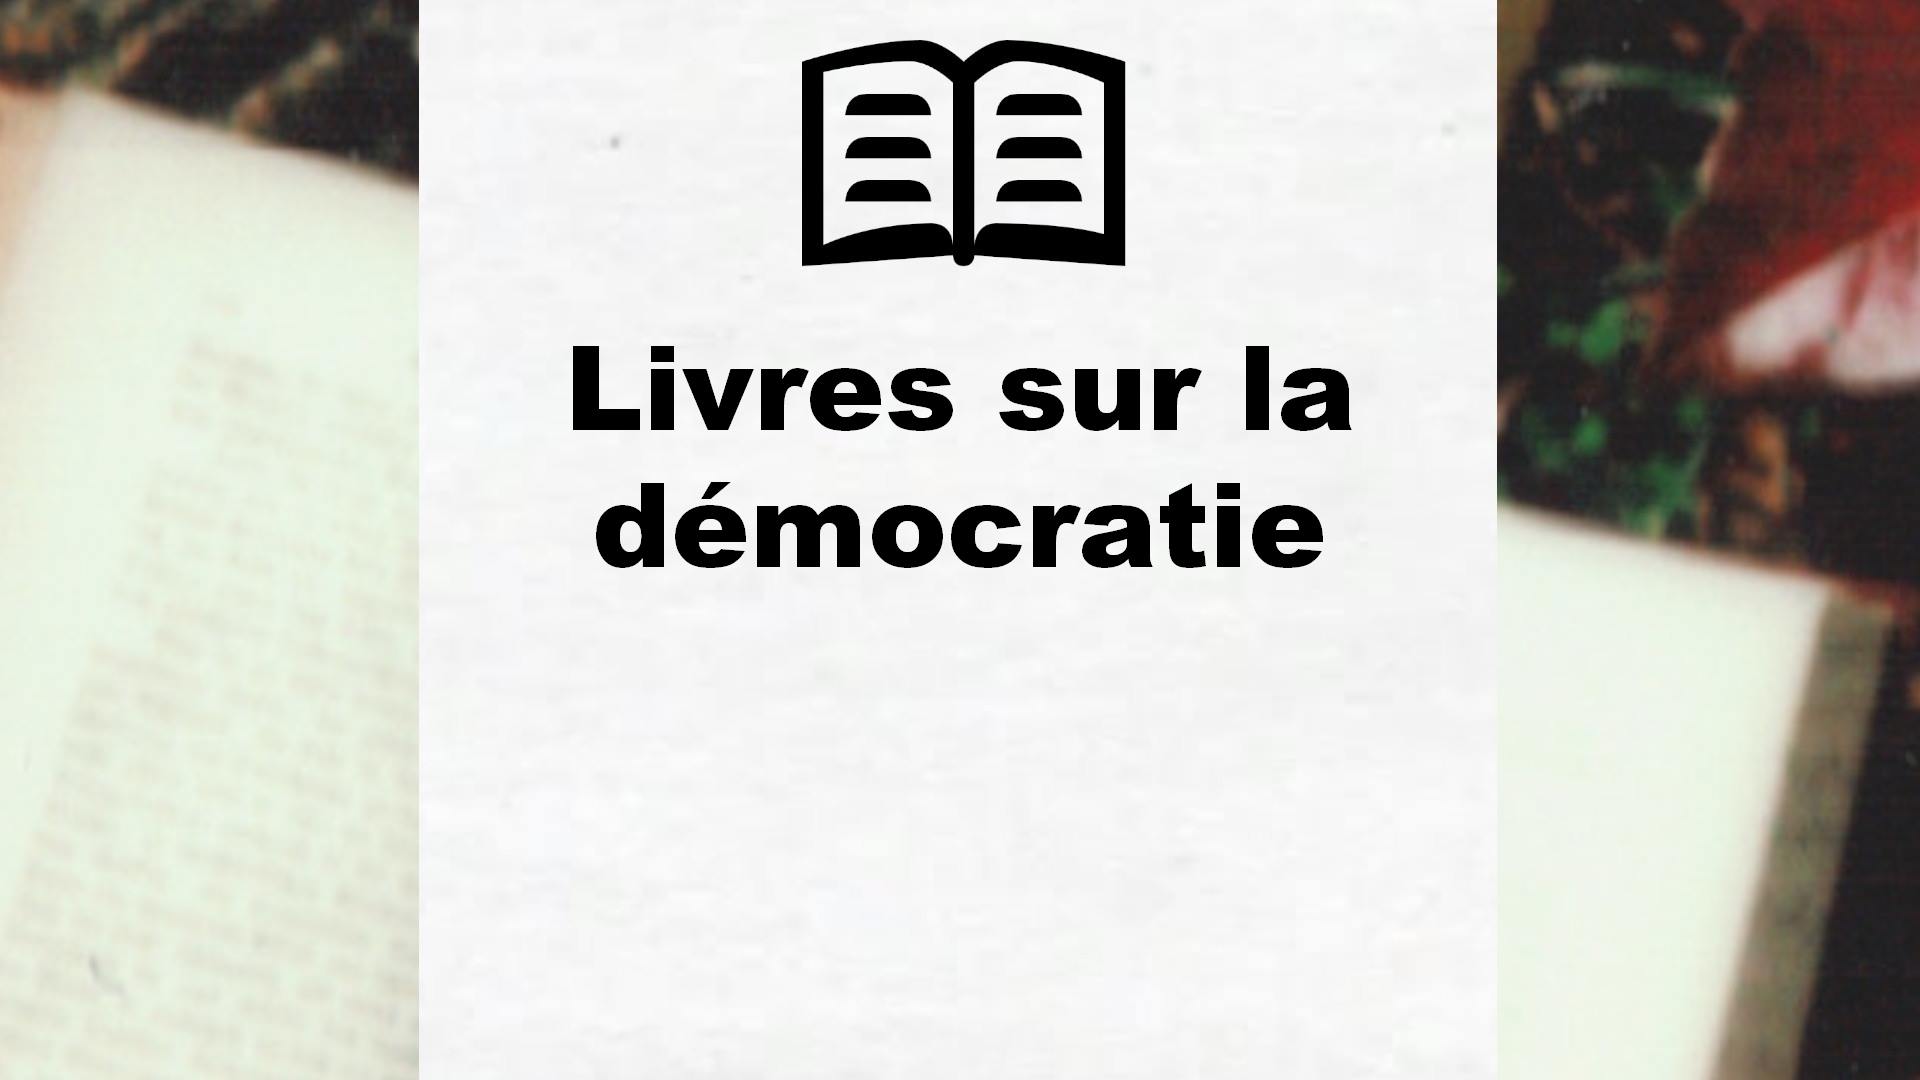 Livres sur la démocratie